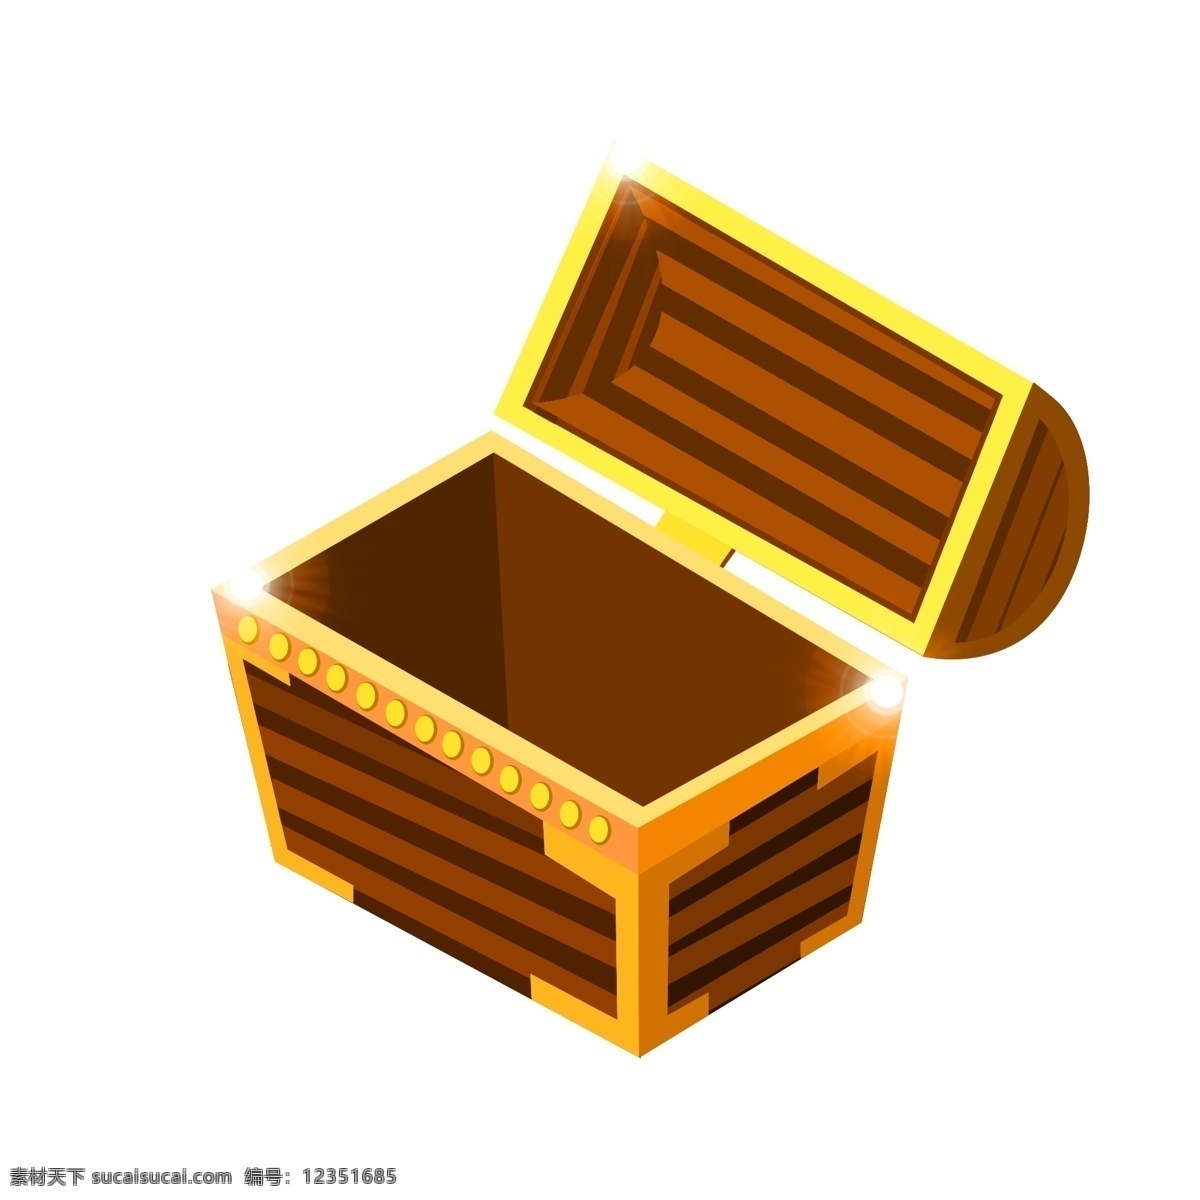 金融 宝 箱 装饰 插画 金融宝箱 黄色的宝箱 漂亮的宝箱 创意宝箱 立体宝箱 卡通宝箱 打开的宝箱